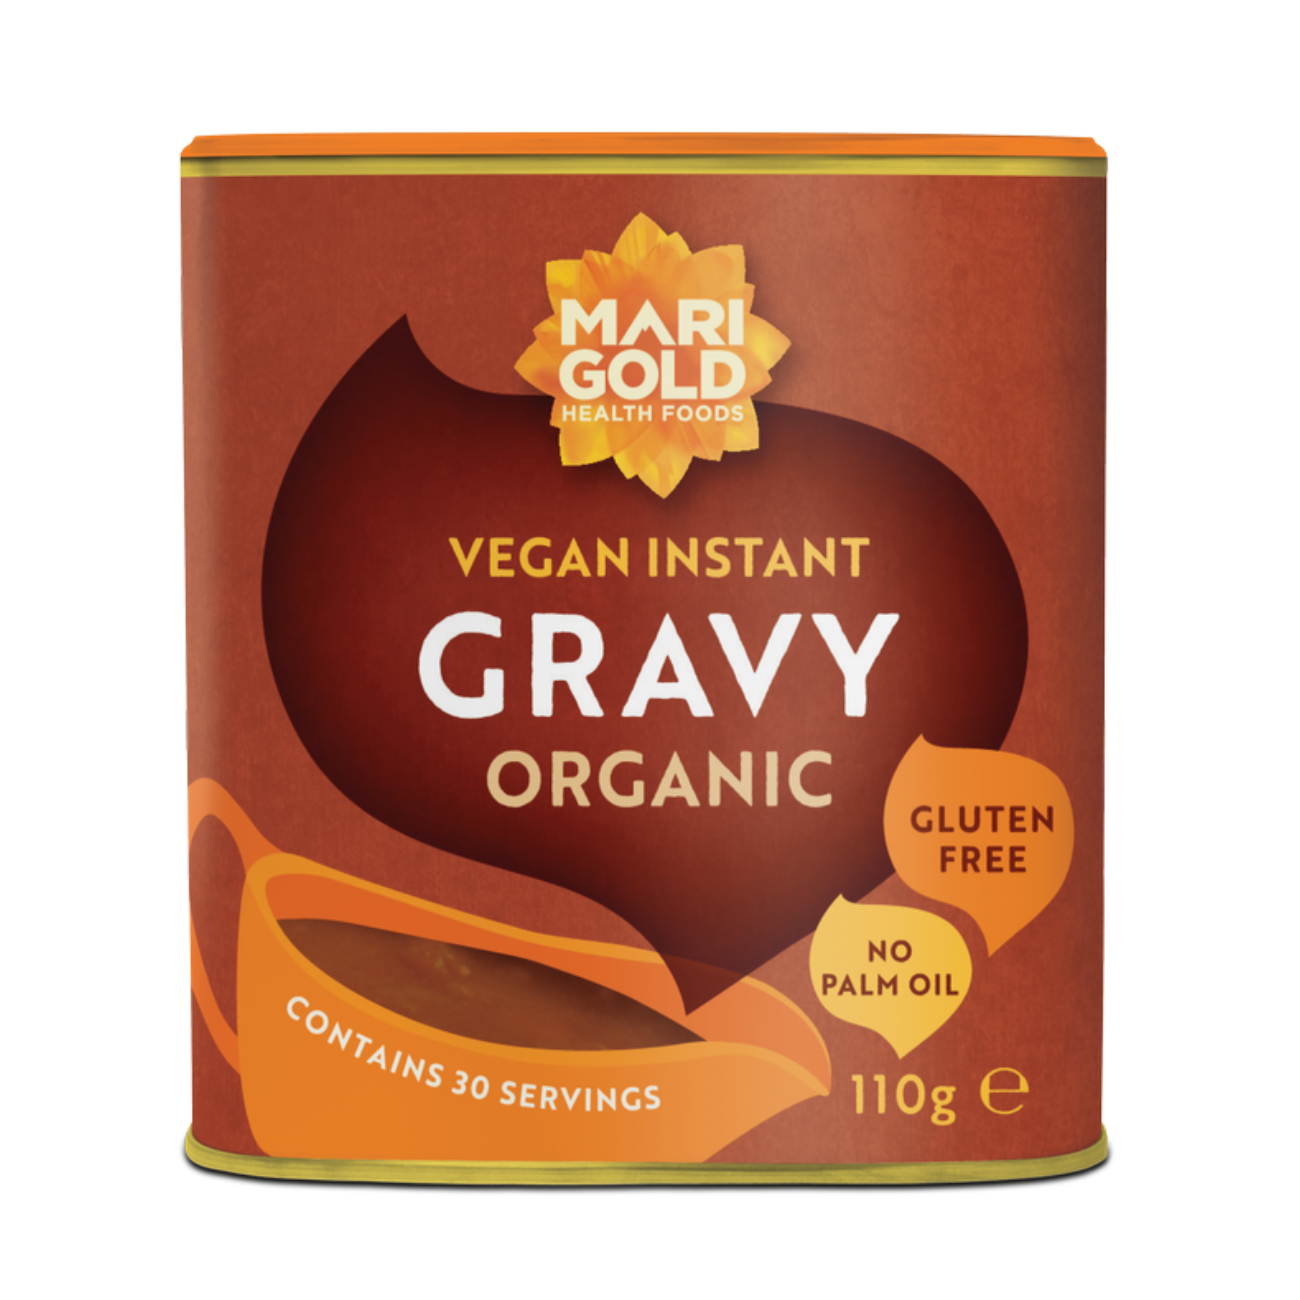 Organic Gravy Powder 110g